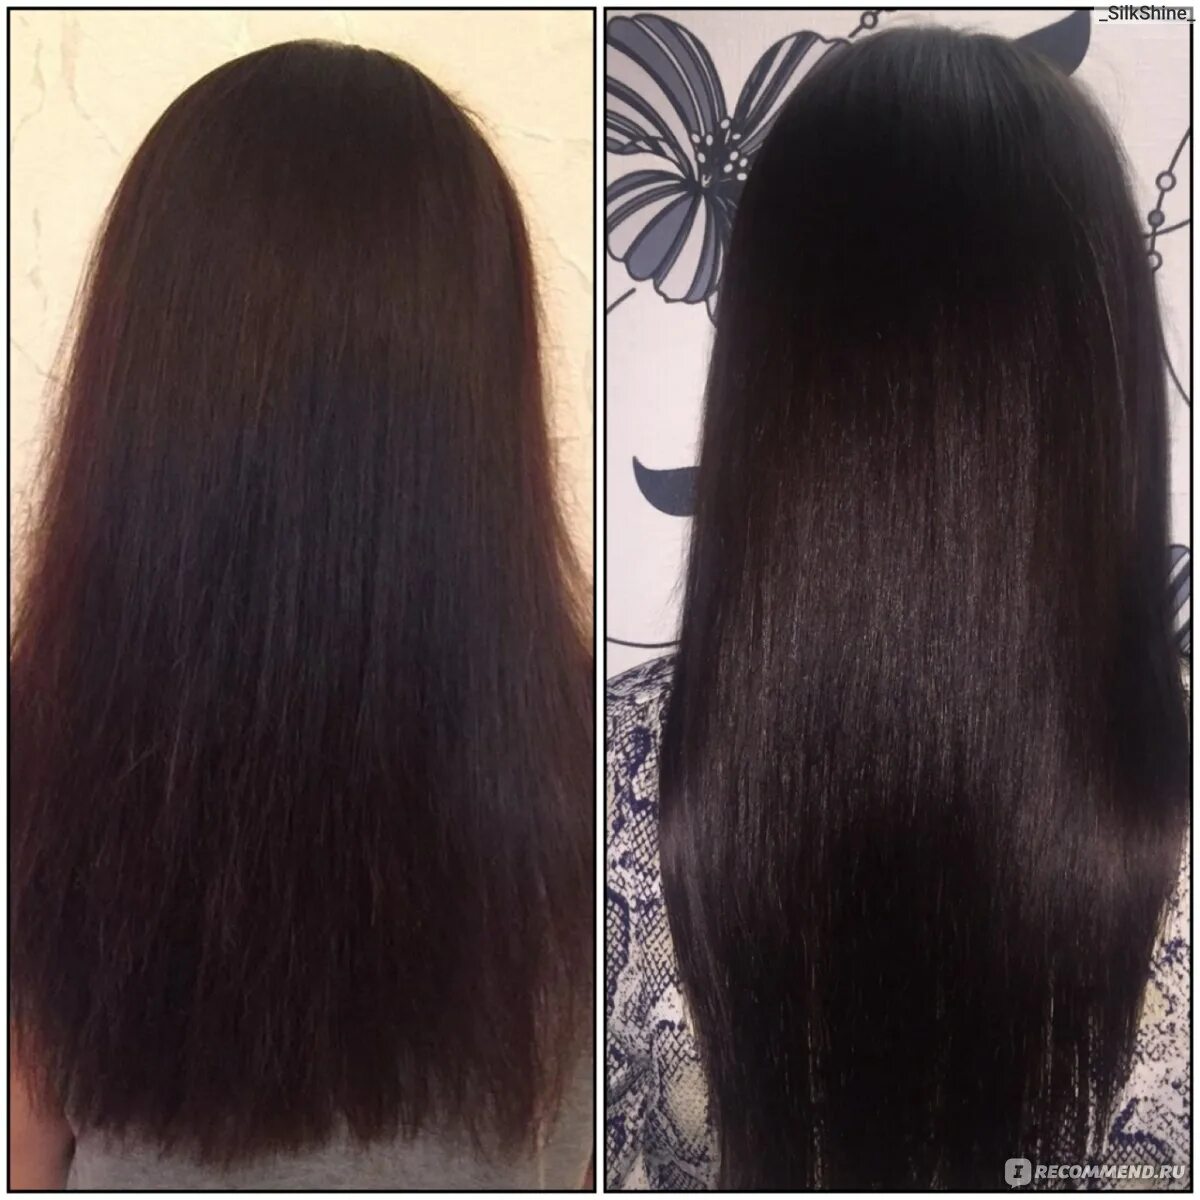 Волосы до и после дарсонваля. Дарсонвализация волос до и после. Дарсонваль для волос эффект до и после. Дарсонваль для волос до и после.